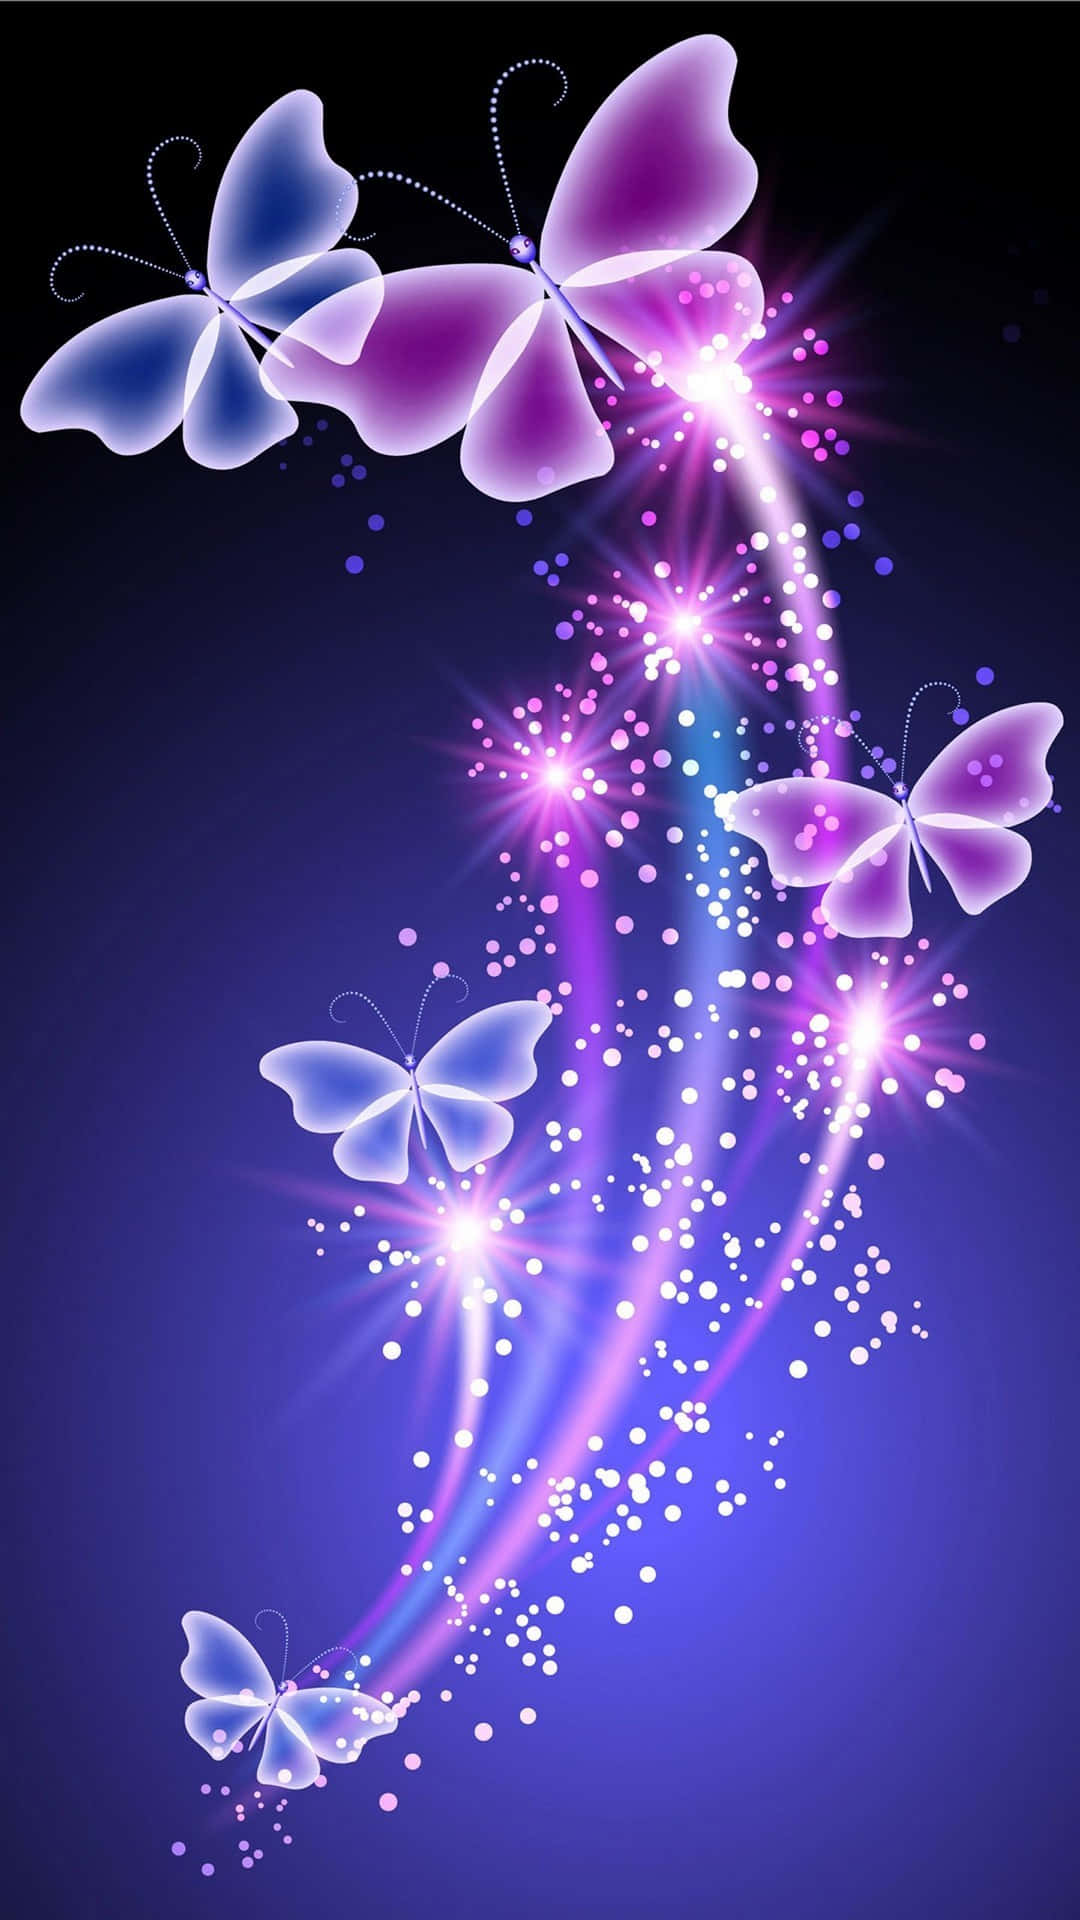 Erlebedie Schönheit Der Natur Mit Dem Lila Schmetterling Iphone Wallpaper